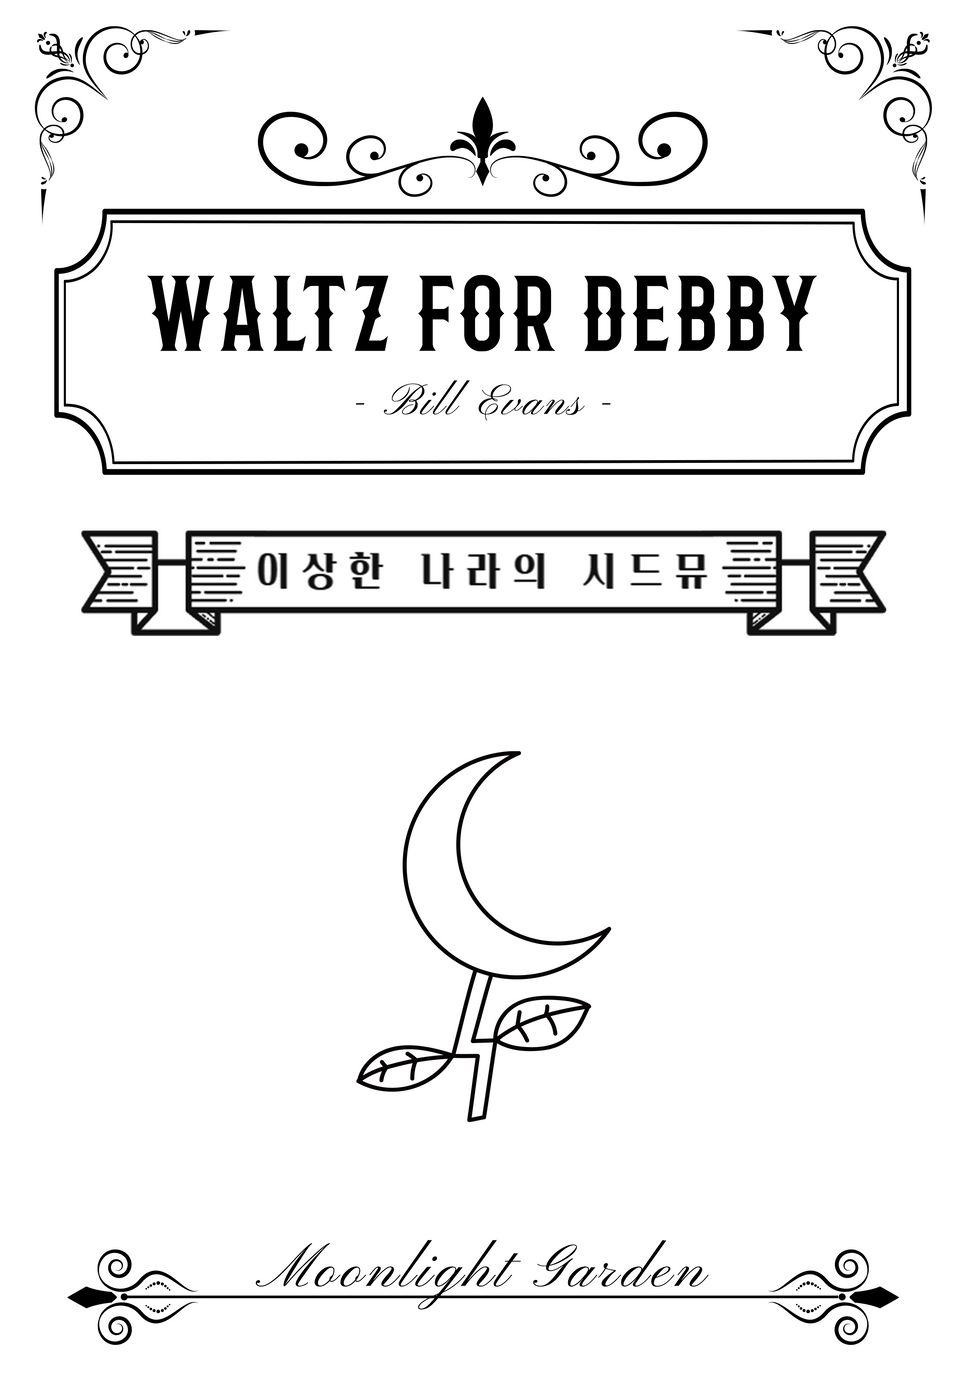 Bill Evans - Waltz For Debby by Moonlight garden